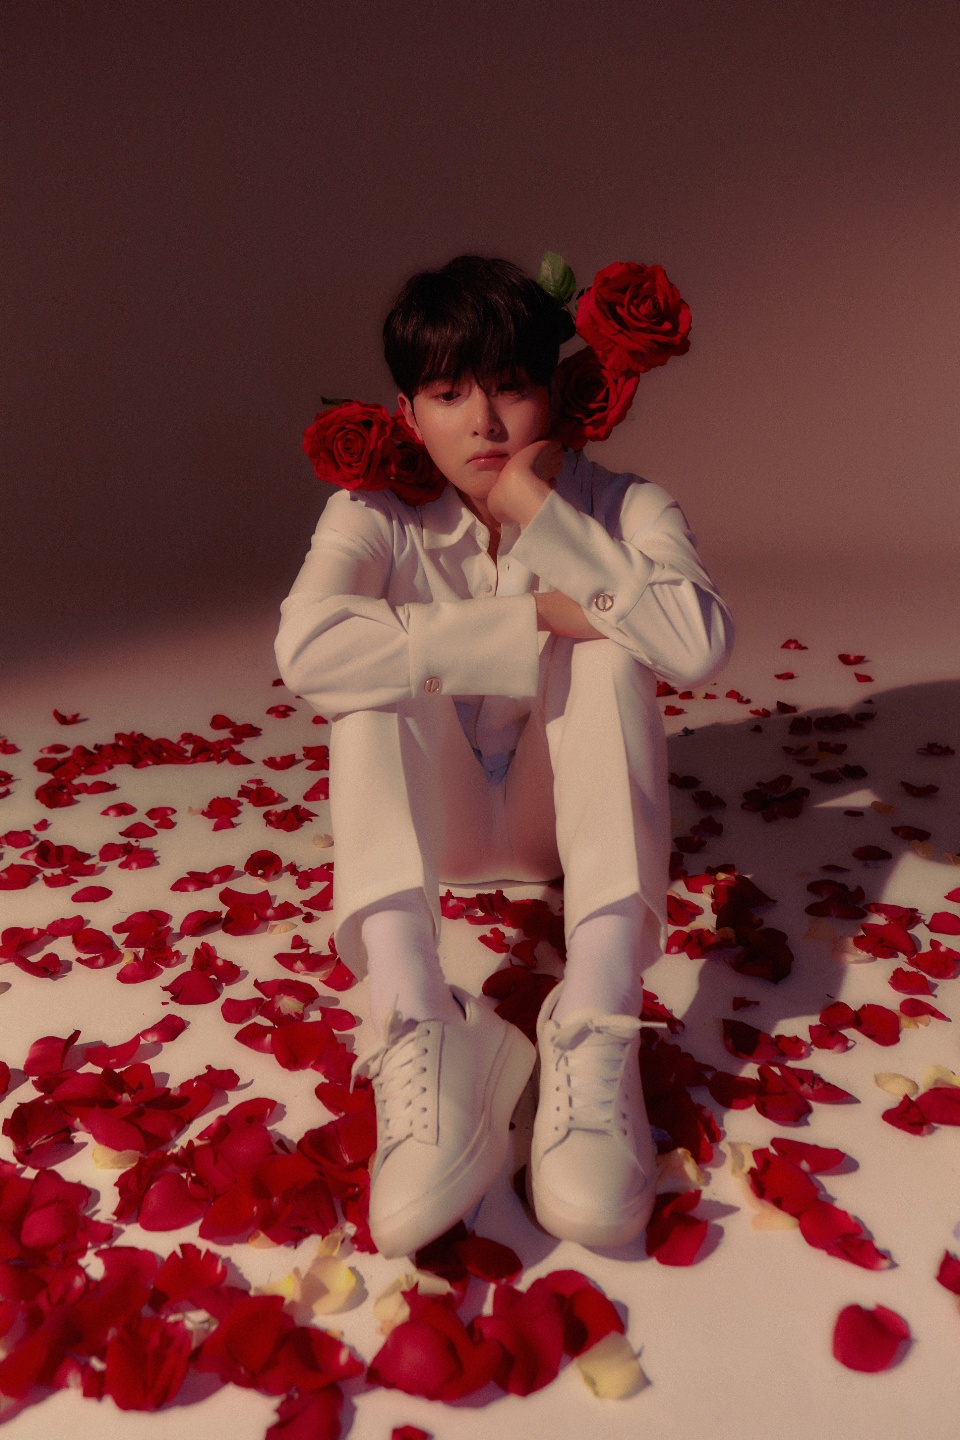 슈퍼주니어 려욱 RYEOWOOK The 3rd Mini Album [A Wild Rose] Image Teaser - 꽃잎 & 가시